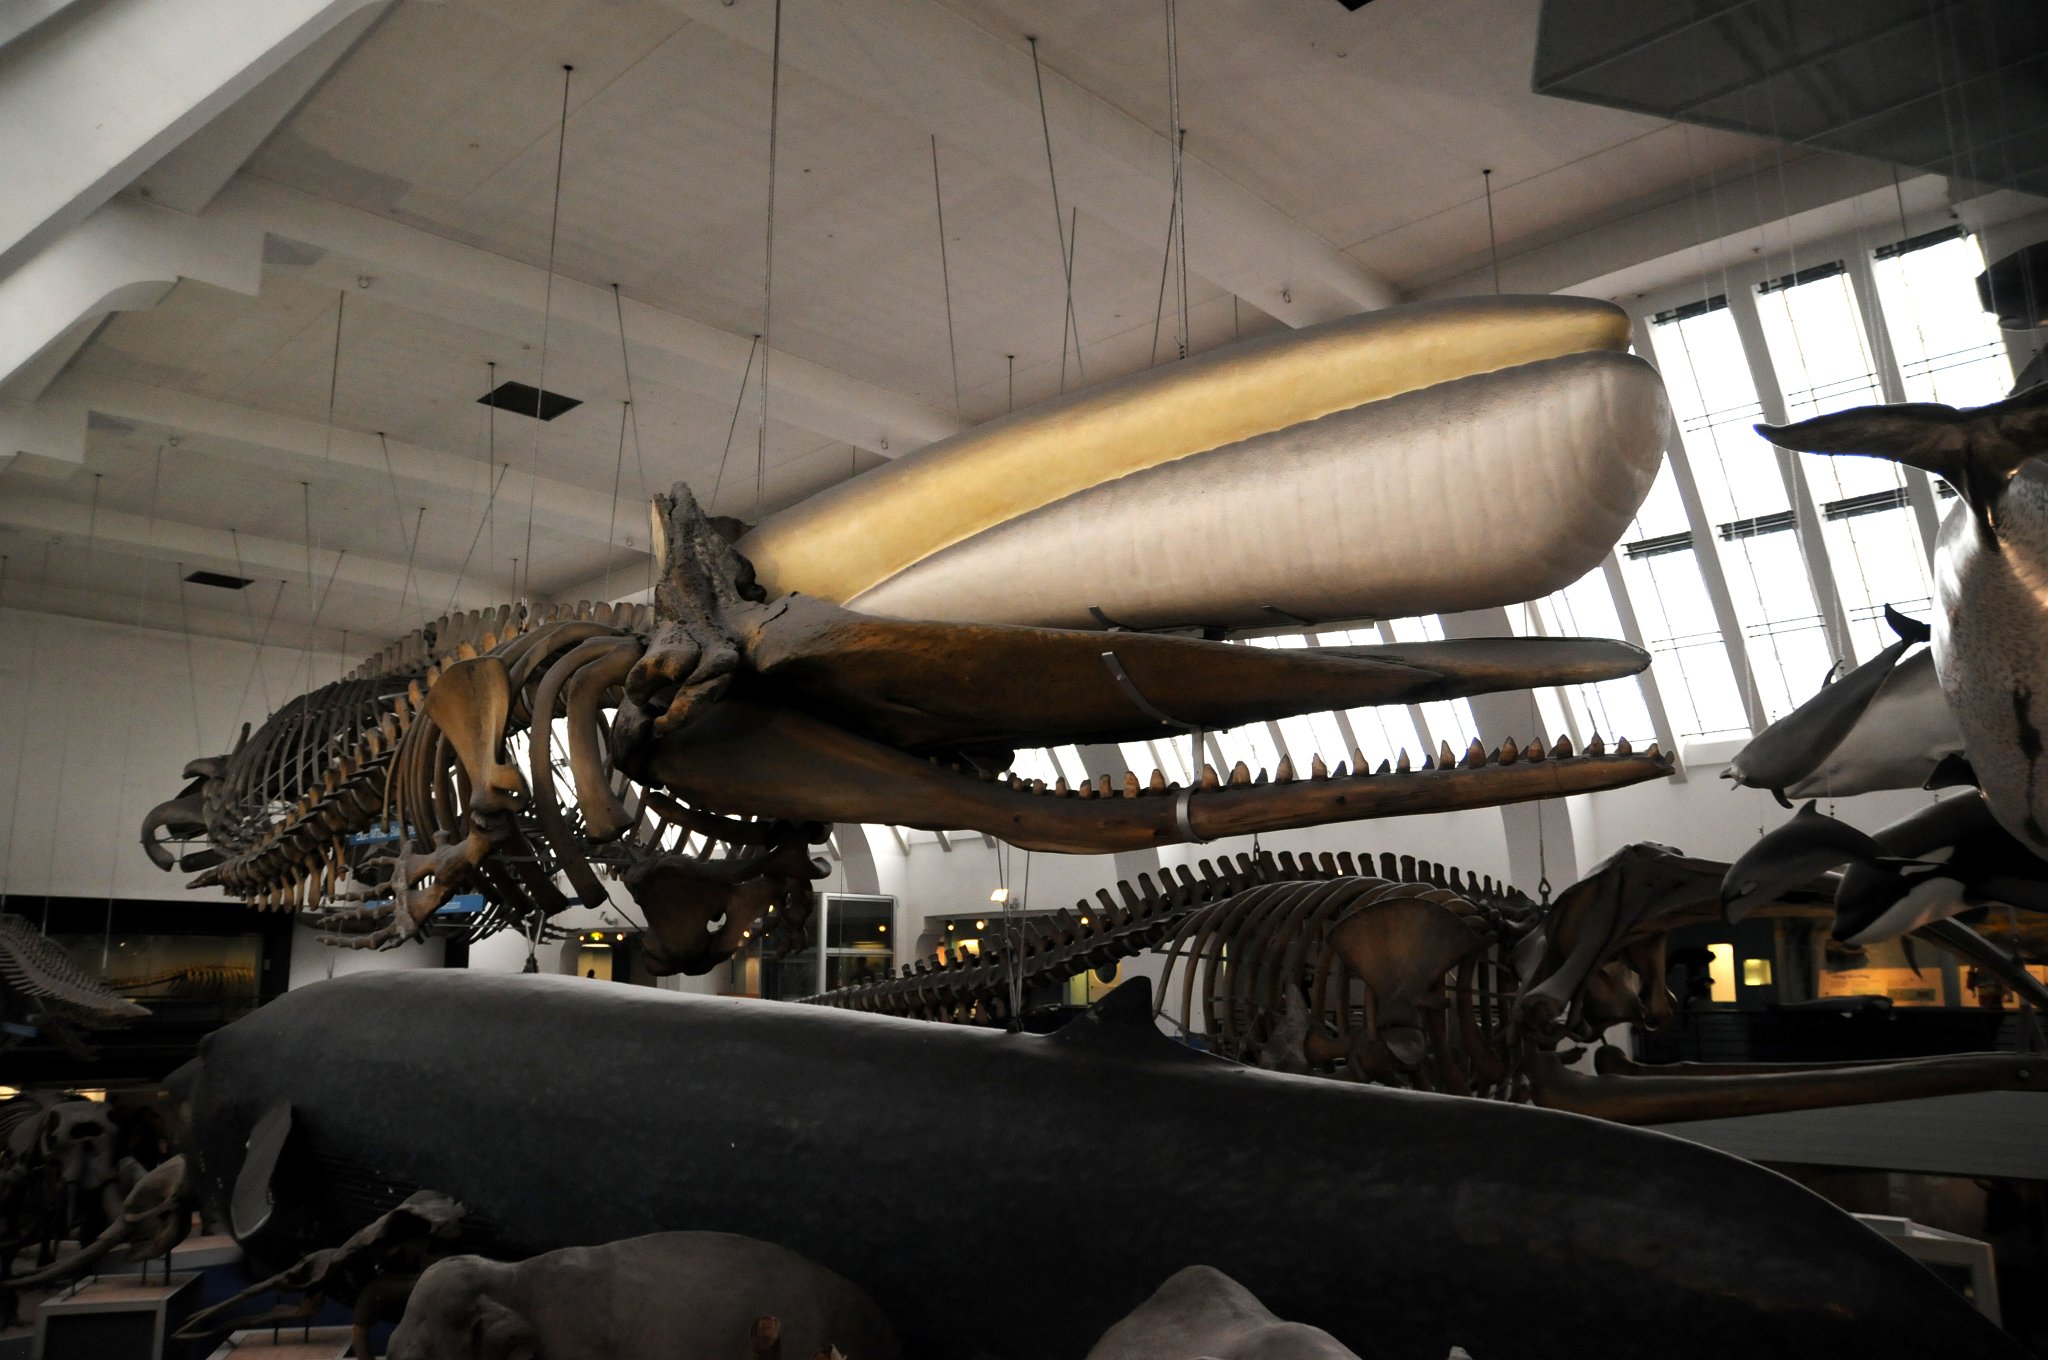 DSC_7307_1.jpg - Kostra Vorvaně obrovského. Vorvaň, též vorvaň obrovský, tuponosý nebo tupočelý (Physeter catodon, macrocephalus, orthodon nebo australasianus) je největší z ozubených velryb a věří se, že jde o vůbec největší ozubené zvíře na světě, jaké kdy žilo – největší doložený jedinec pravděpodobně dosahoval až 28 metrů délky a váhy 150 tun. Anglický název Sperm Whale souvisí s mléčně bílou substancí spermacet nacházející se v její hlavě a původně zaměněnou se spermatem. Obrovská hlava vorvaně, jeho charakteristický tvar a v neposlední řadě ústřední role v románu Hermana Melvilla Bílá velryba‎, vedla mnoho lidí k tomu, že jej líčili jako archetyp velryby. Částečně díky Melvillovi je vorvaň obecně spojován s napůl mýtickým Leviatanem z biblických příběhů.